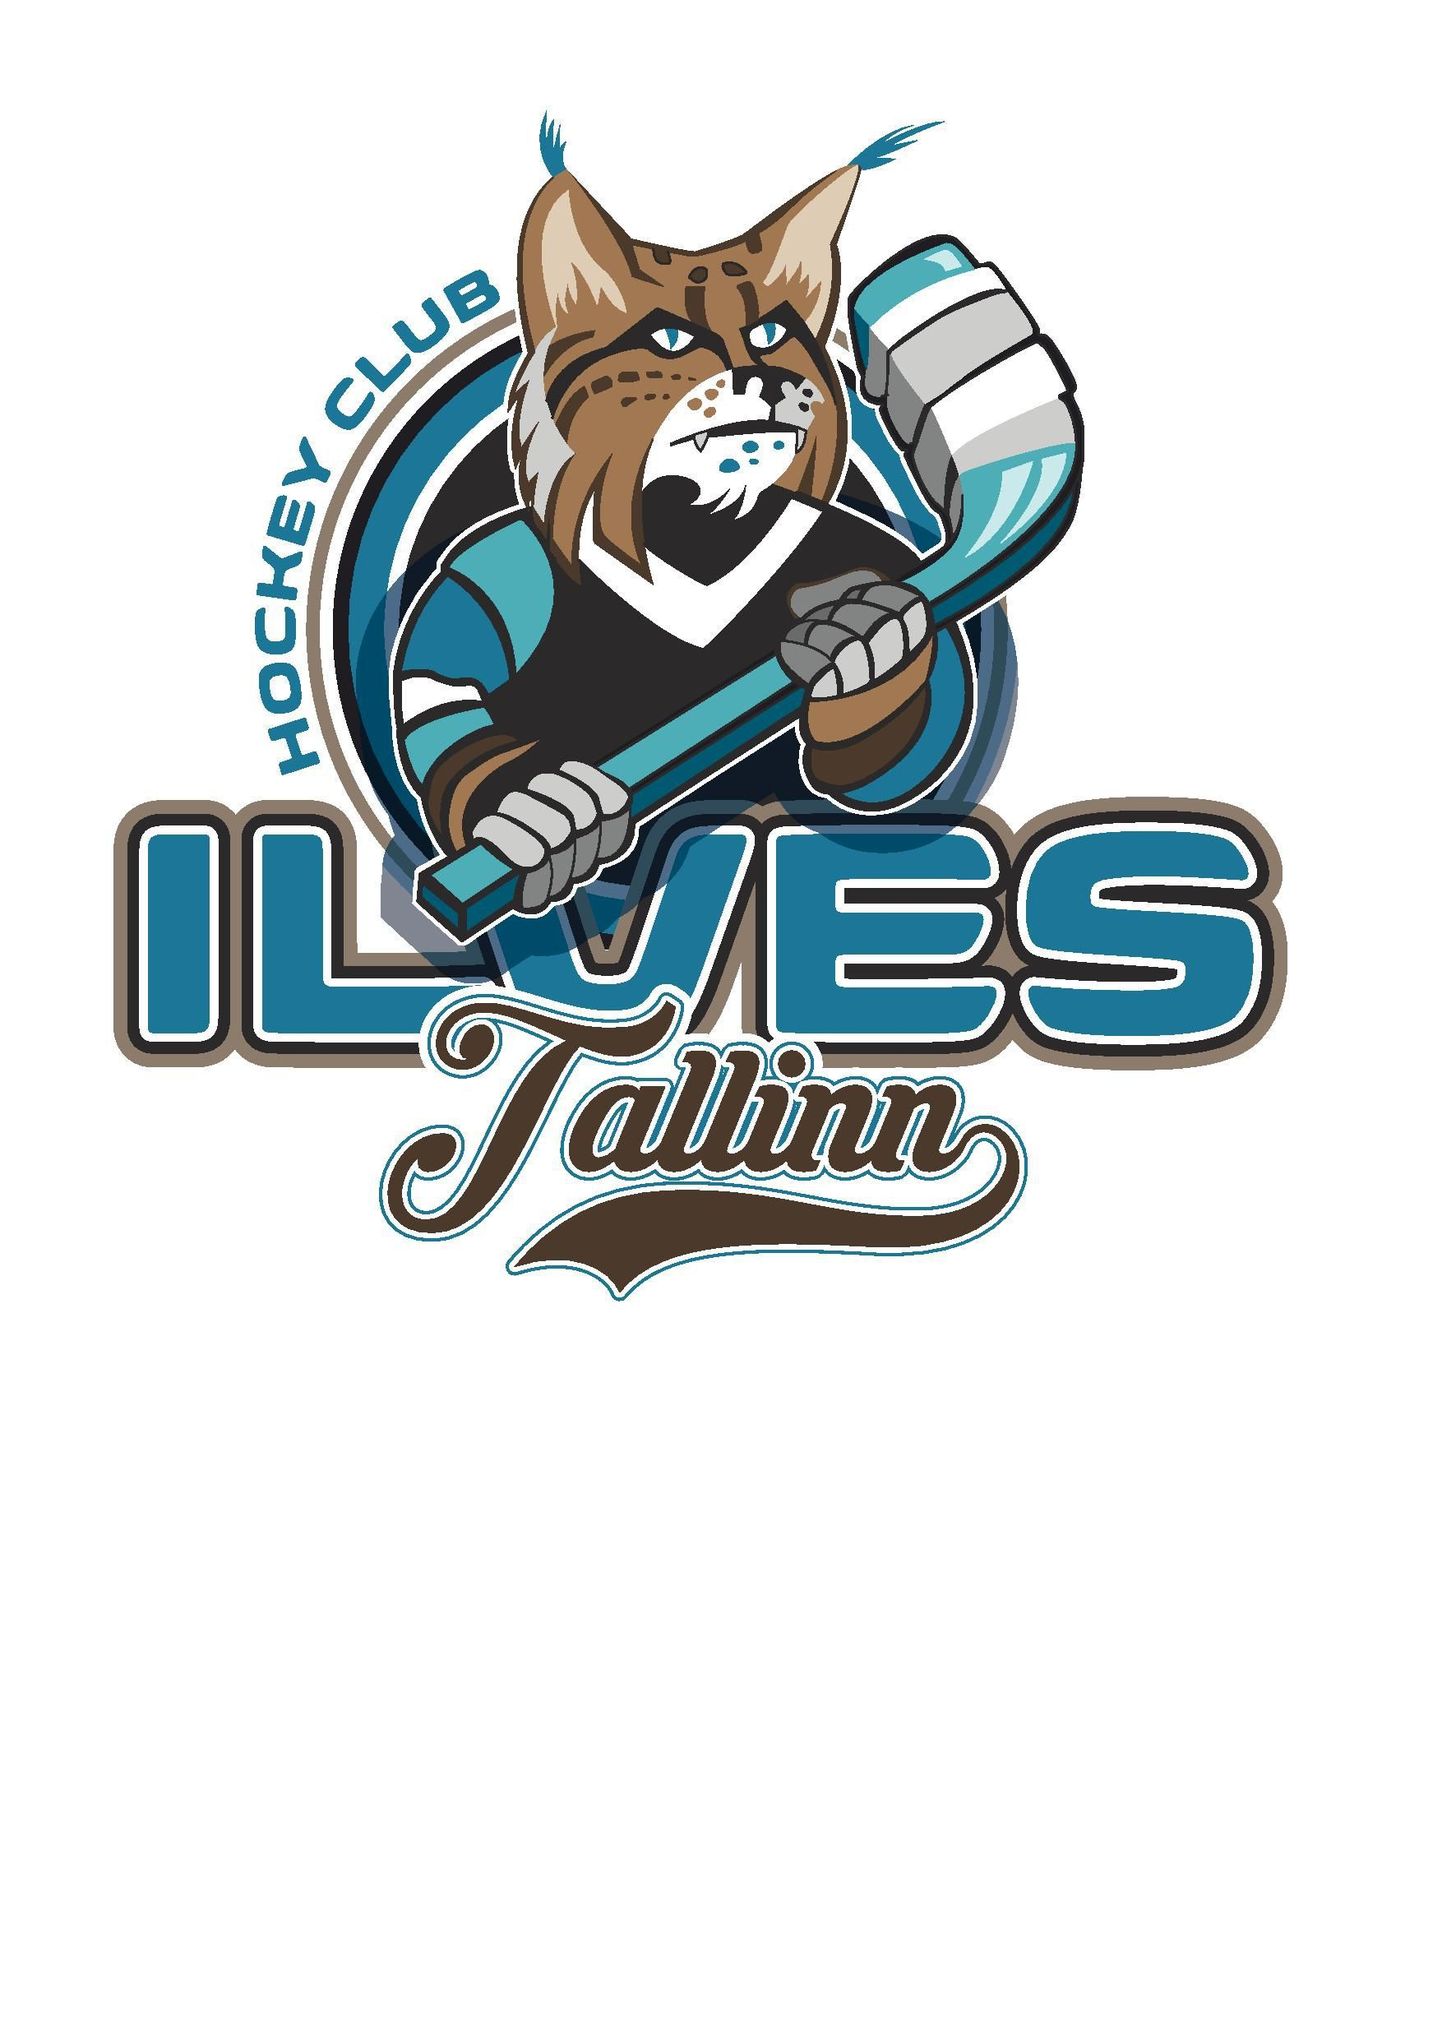 Hokiklubi Ilves logo.